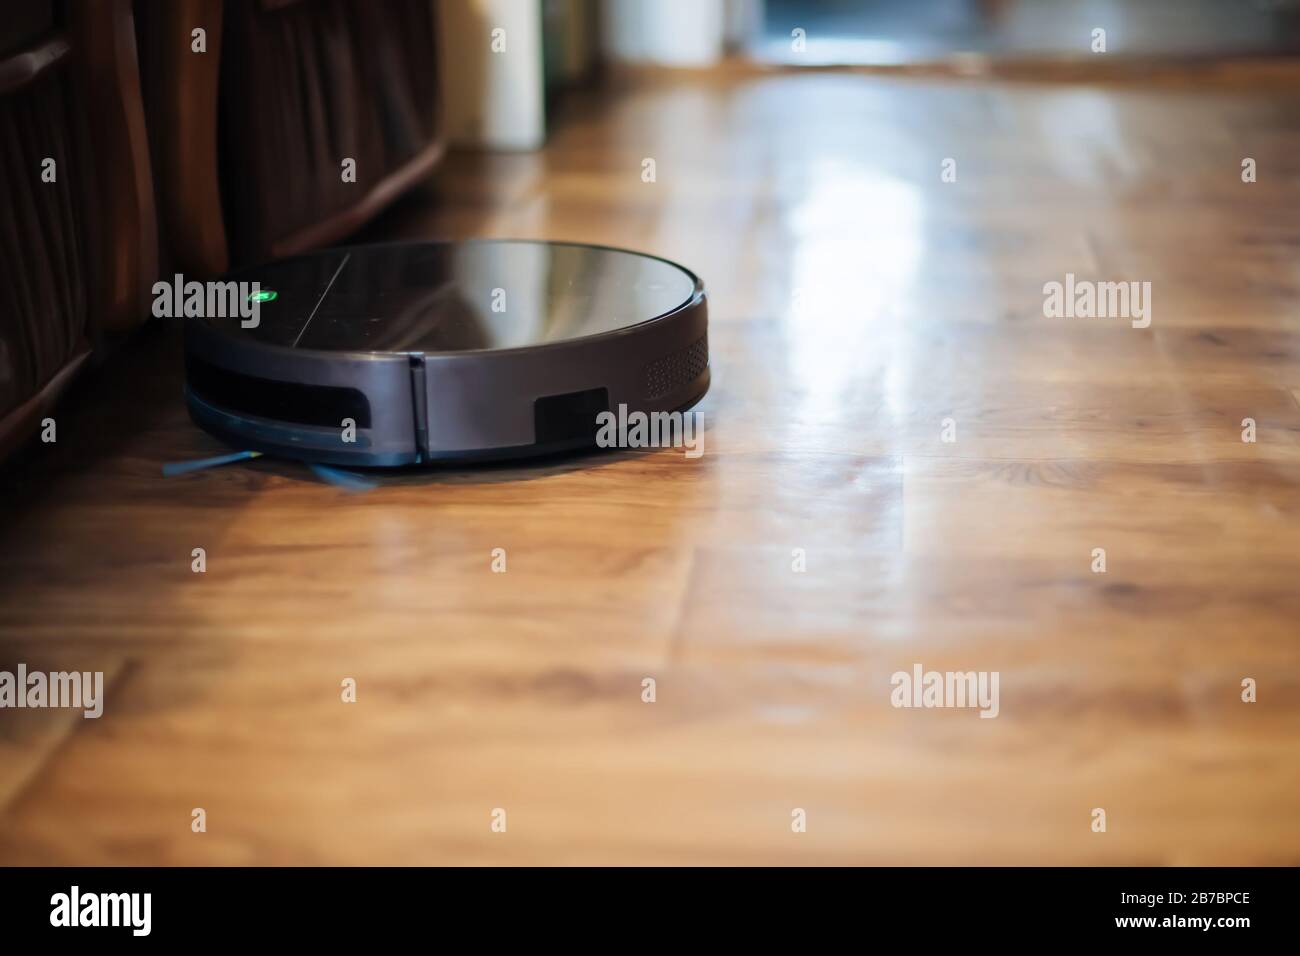 le robot-aspirateur élimine la poussière dans la pièce sur le sol brun. aspirateur dans l'appartement ordinaire près des chaises. appareil sans fil domestique moderne pour nettoyer Banque D'Images